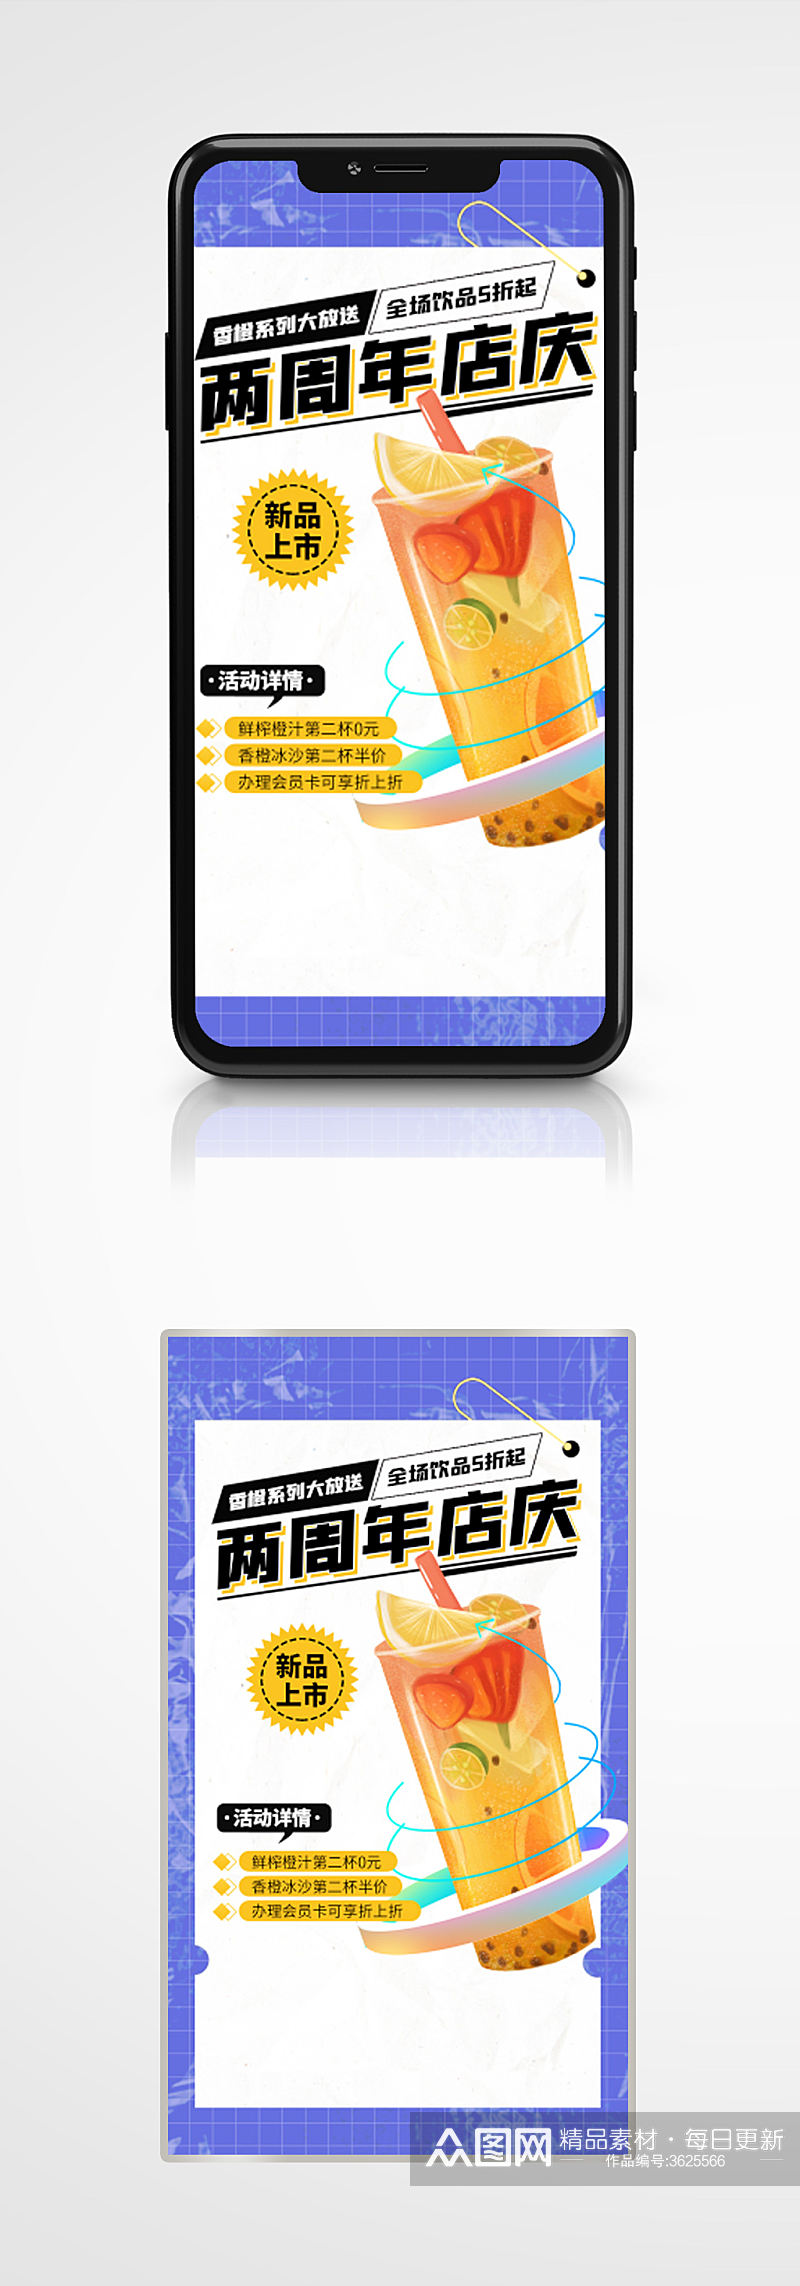 奶茶周年庆优惠手机海报水果茶手绘促销素材